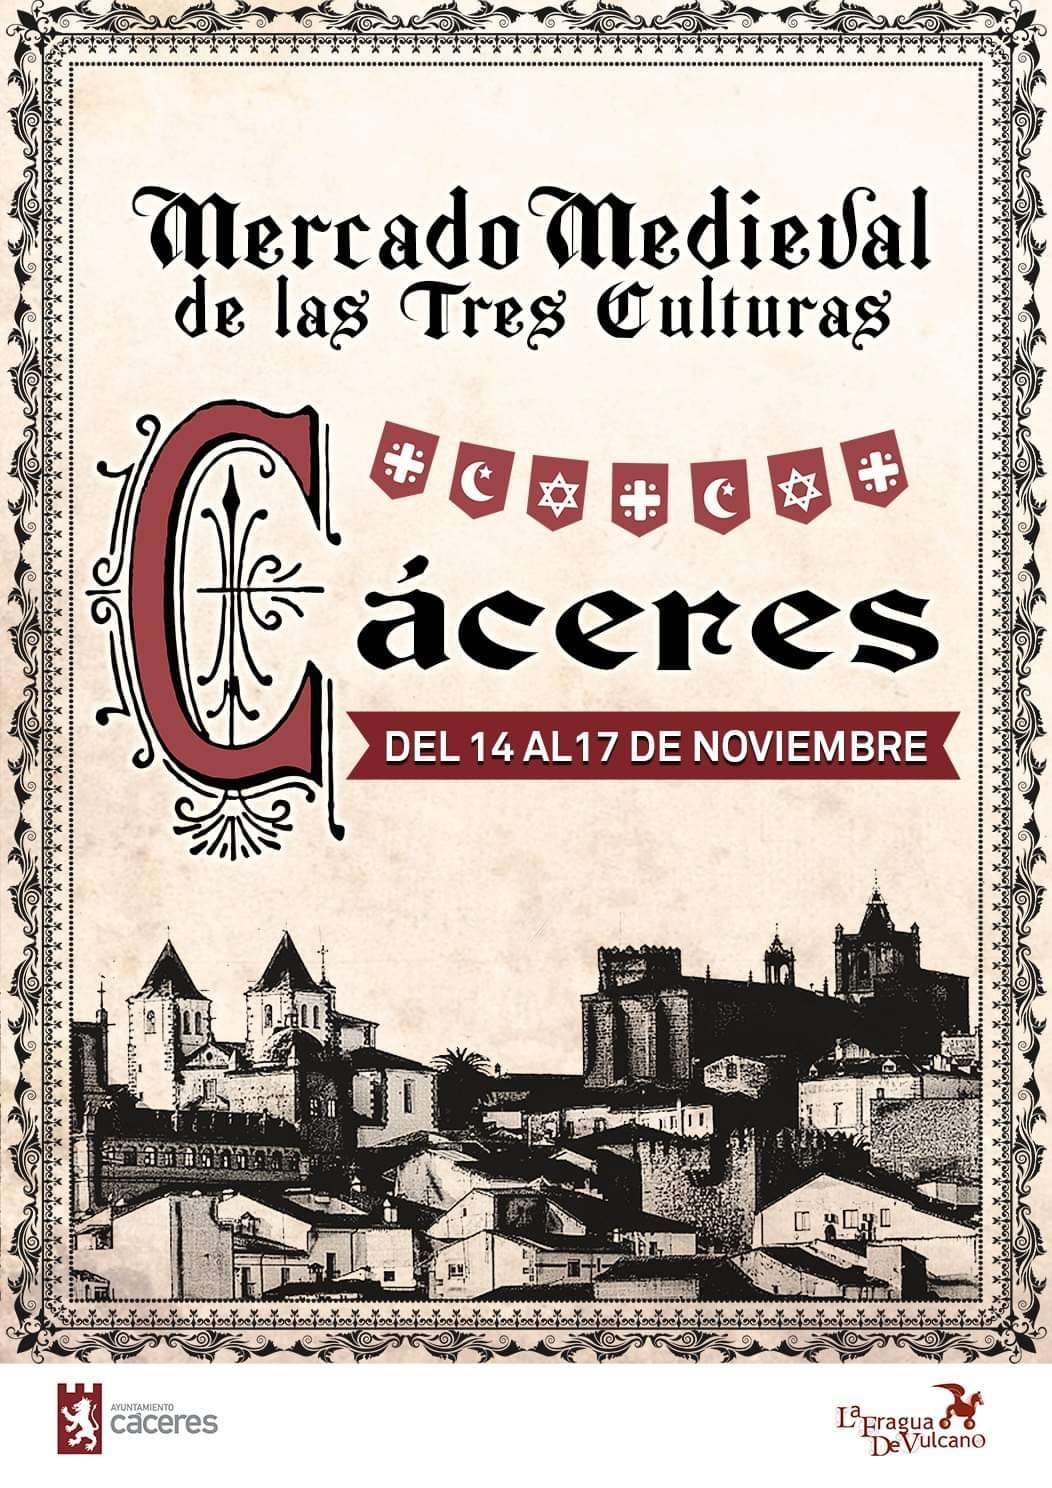 Mercado medieval de las tres culturas 2019 - Cáceres